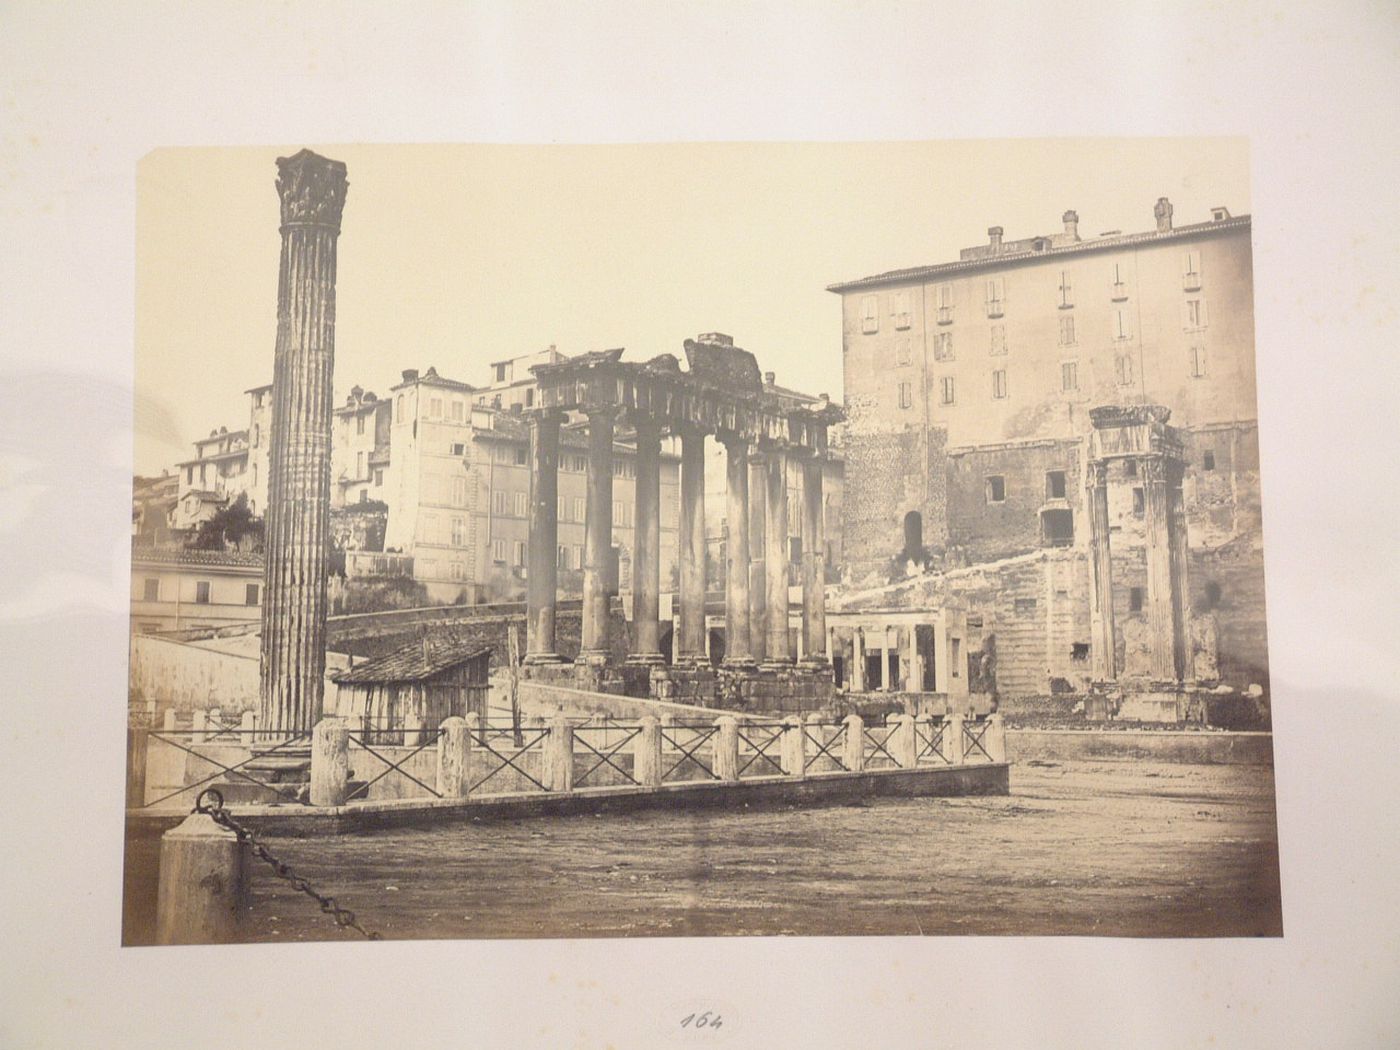 View of the Roman Forum showing the Column of Phocas, the Tempio di Saturno, and the Tempio di Vespasiano, Rome, Italy